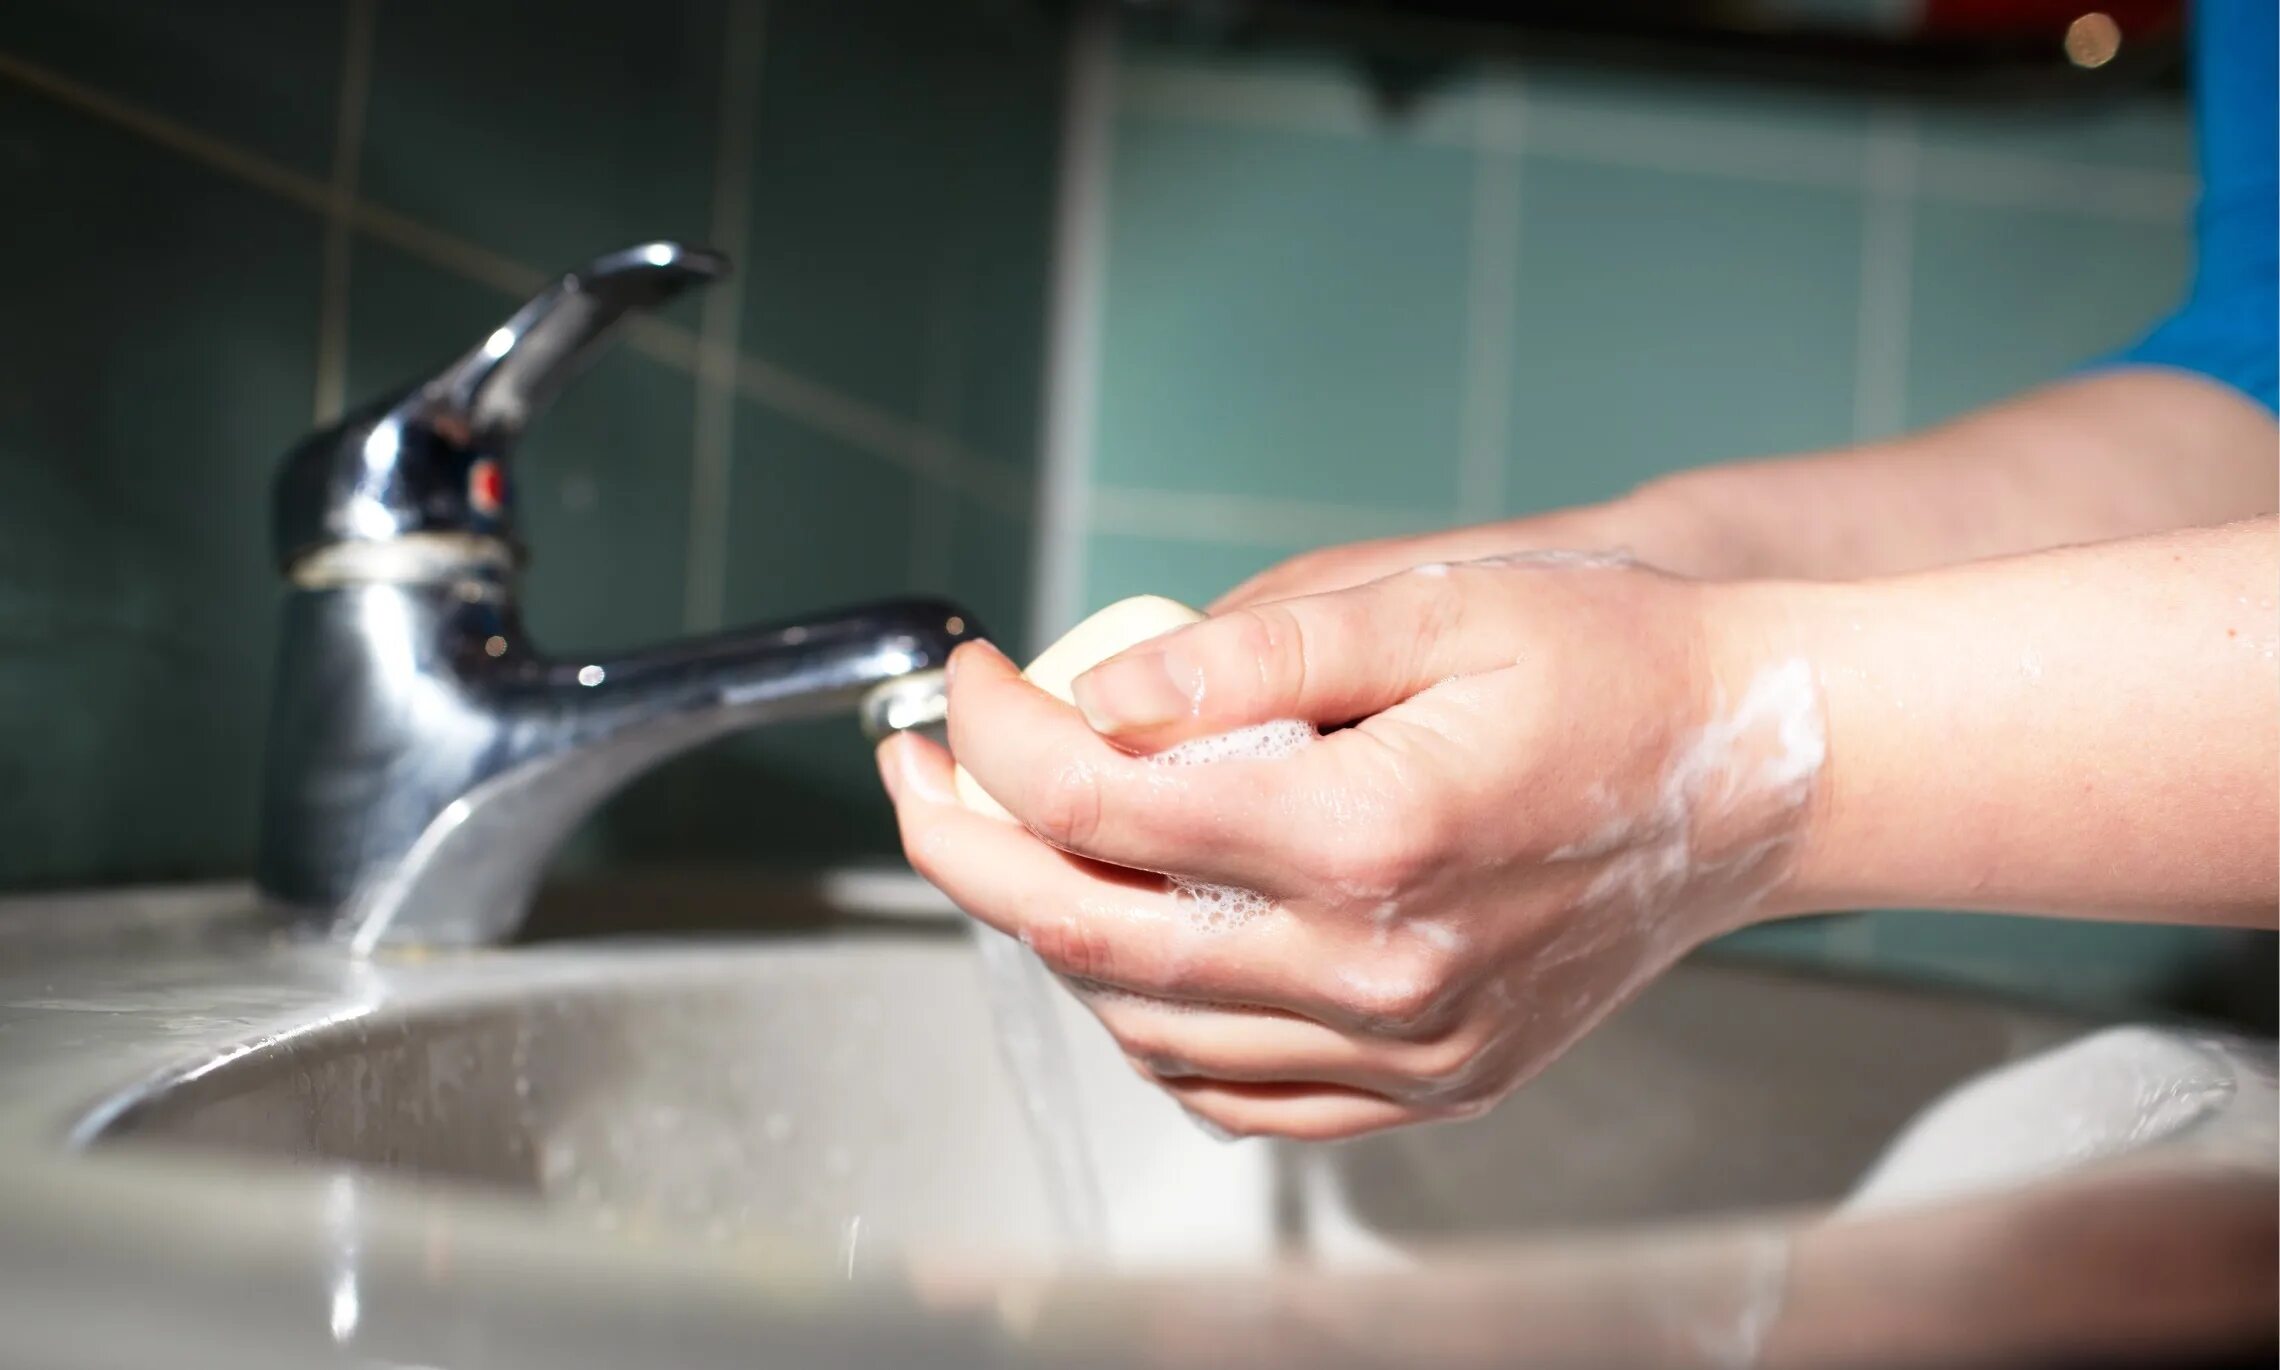 Мытье рук. Мытье рук с мылом. Гигиена рук. Руки моются. Мытье рук относится к